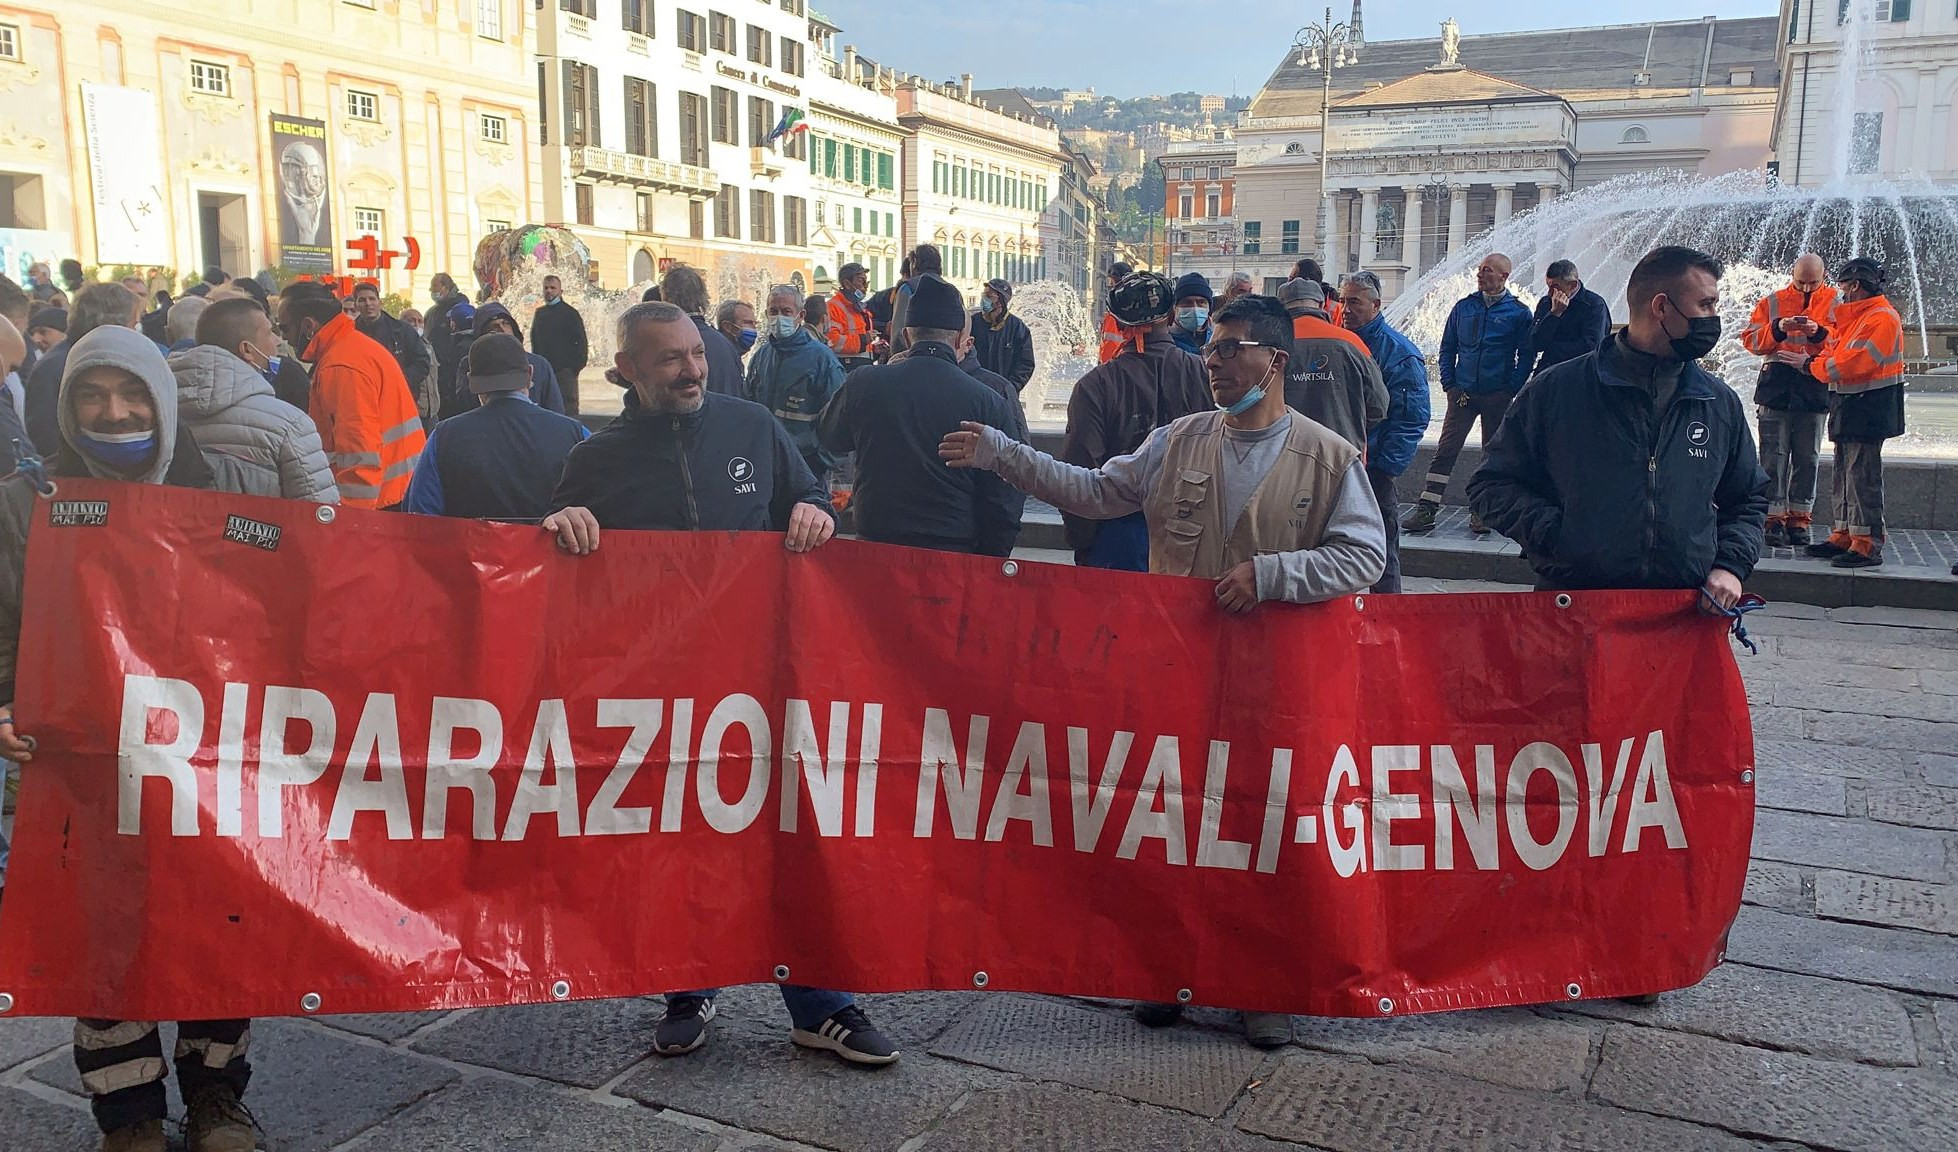 Genova, operai riparazioni navali in piazza contro chiusura Wartsila di Trieste